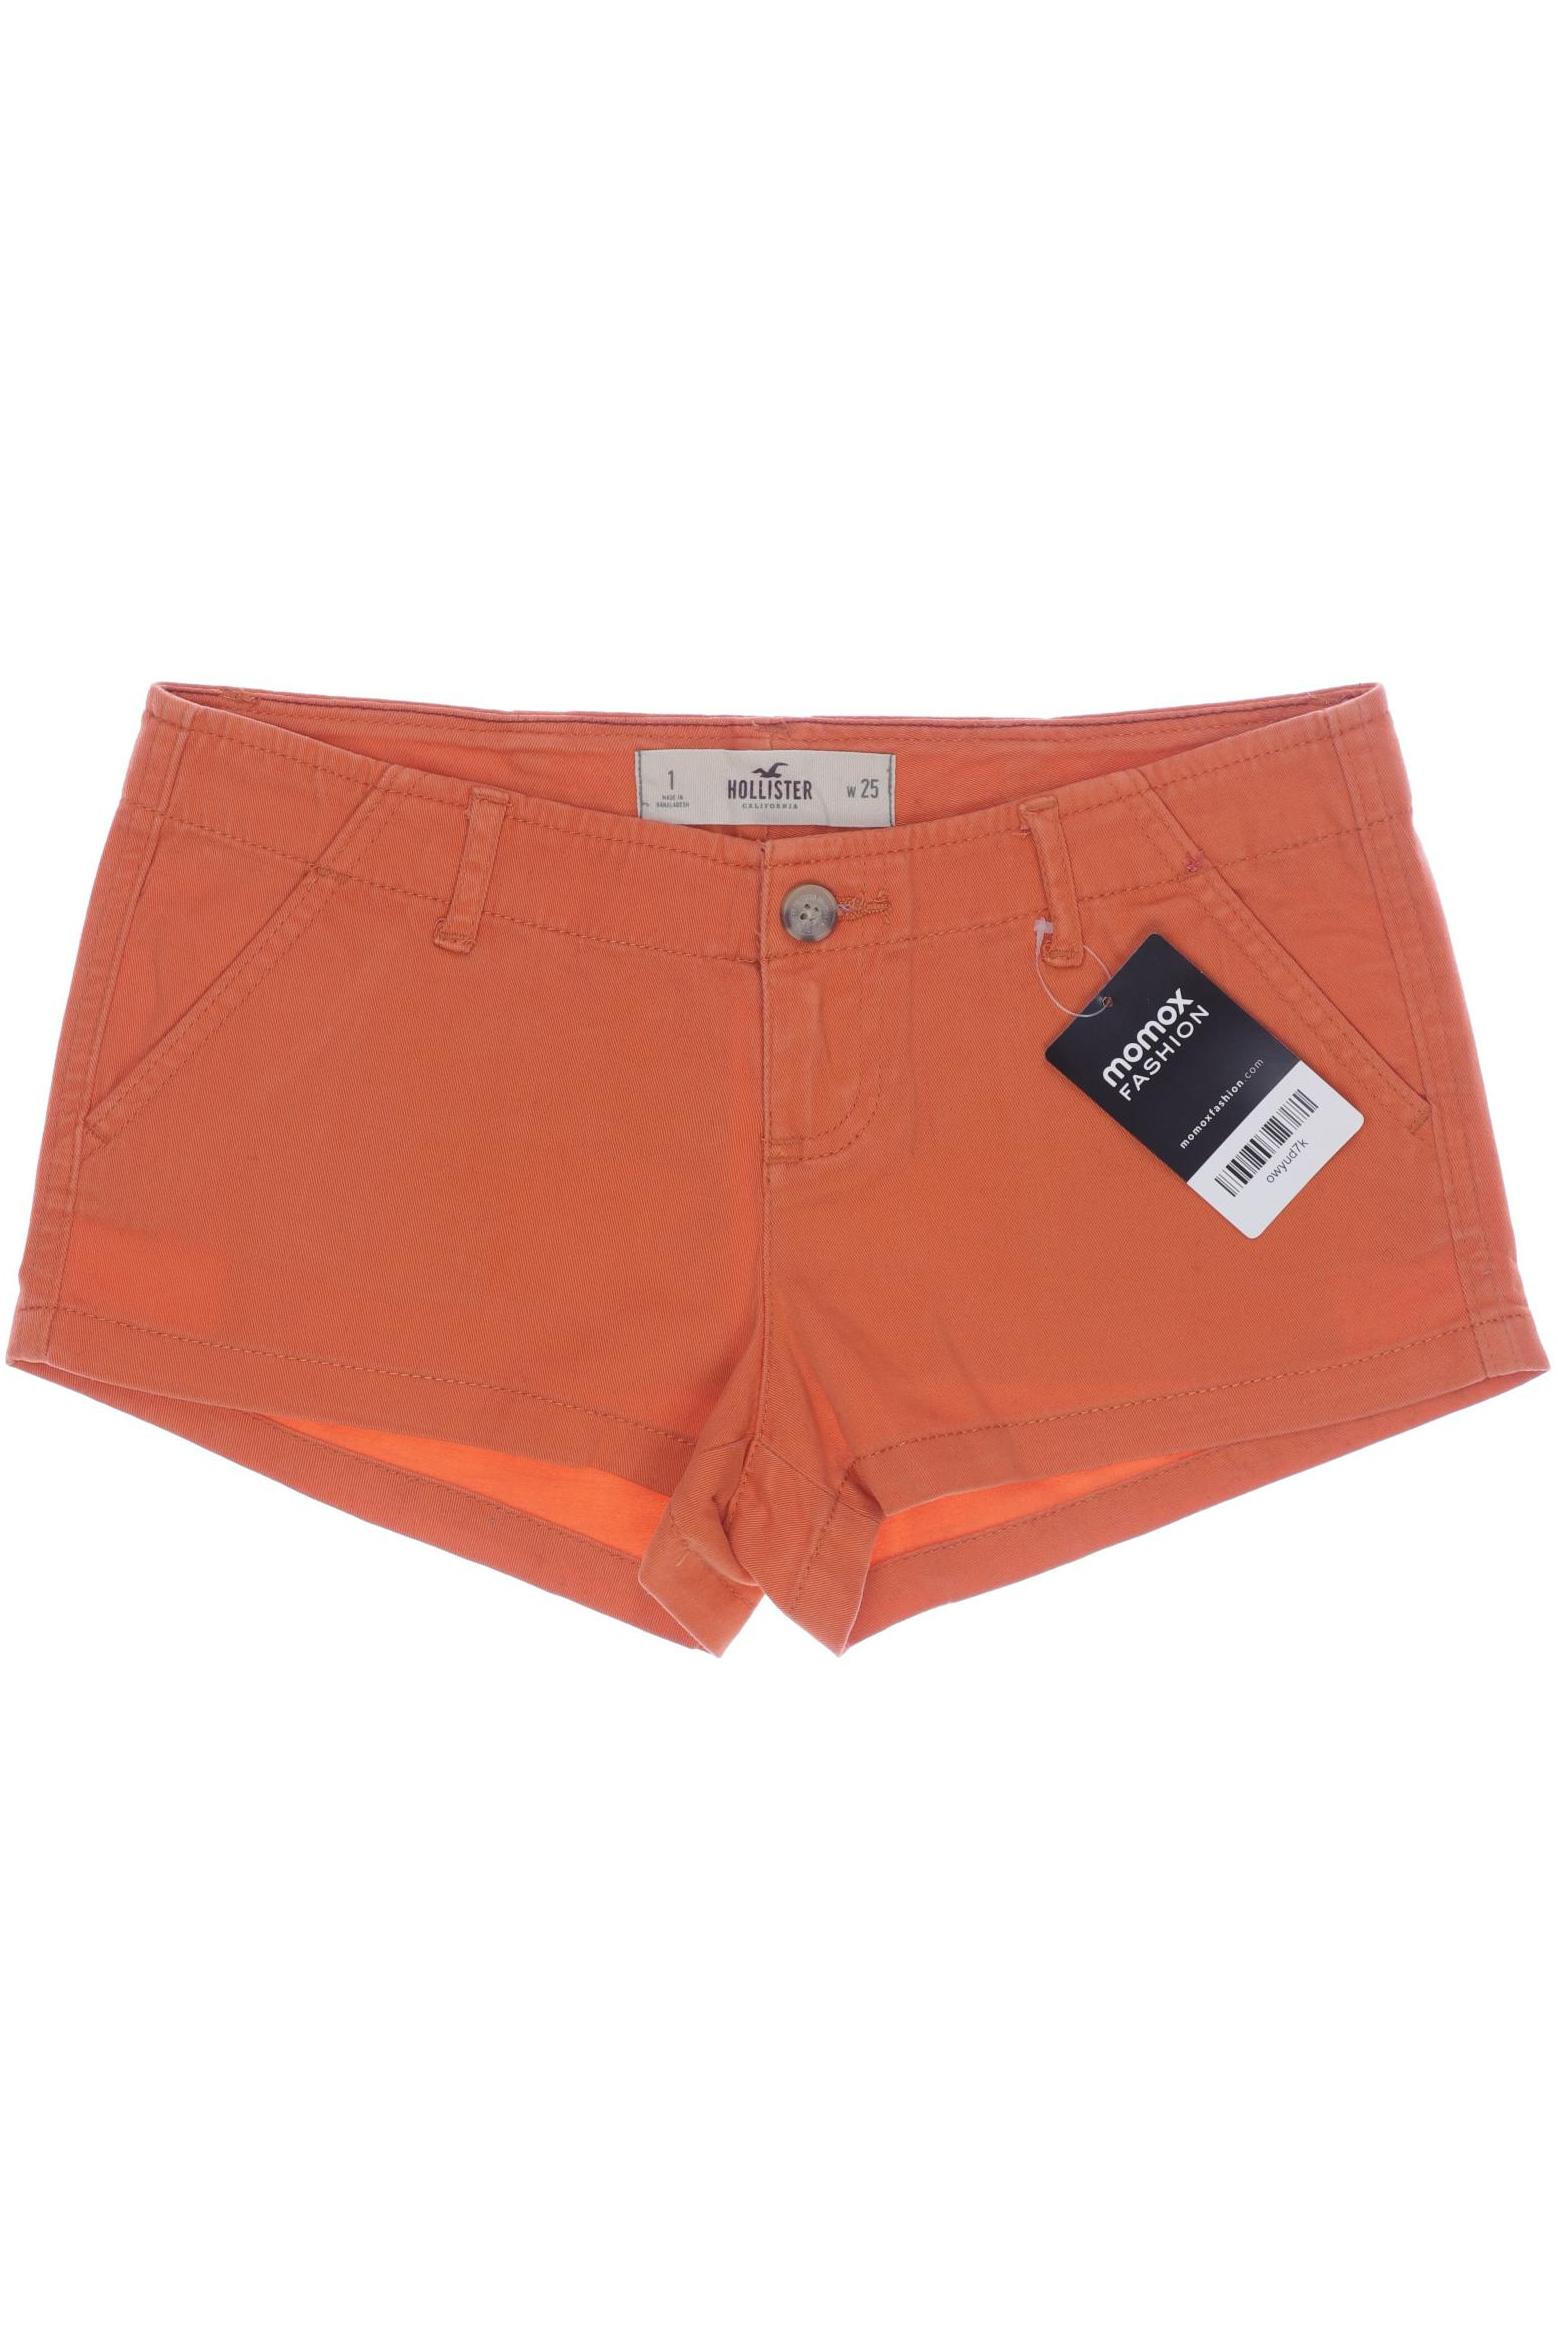 Hollister Damen Shorts, orange, Gr. 34 von Hollister